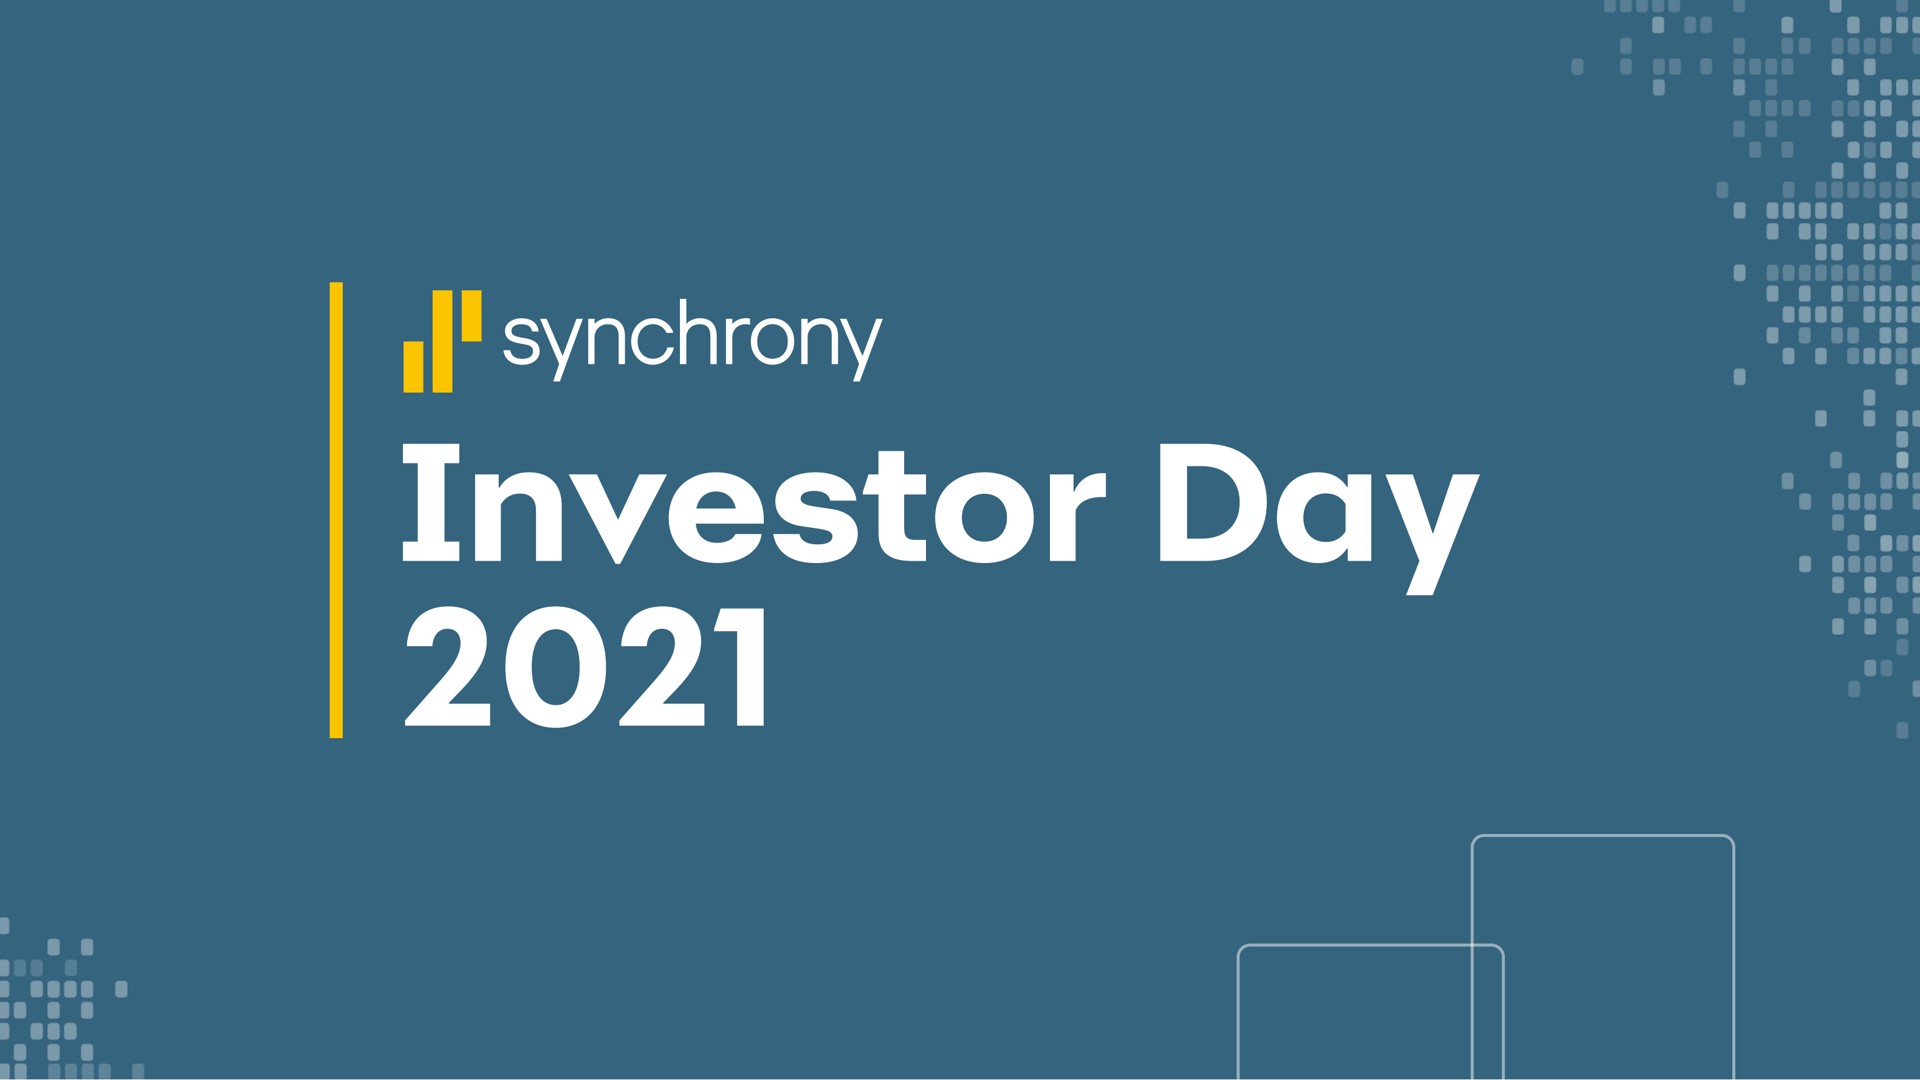 synchrony investor day | Synchrony Financial